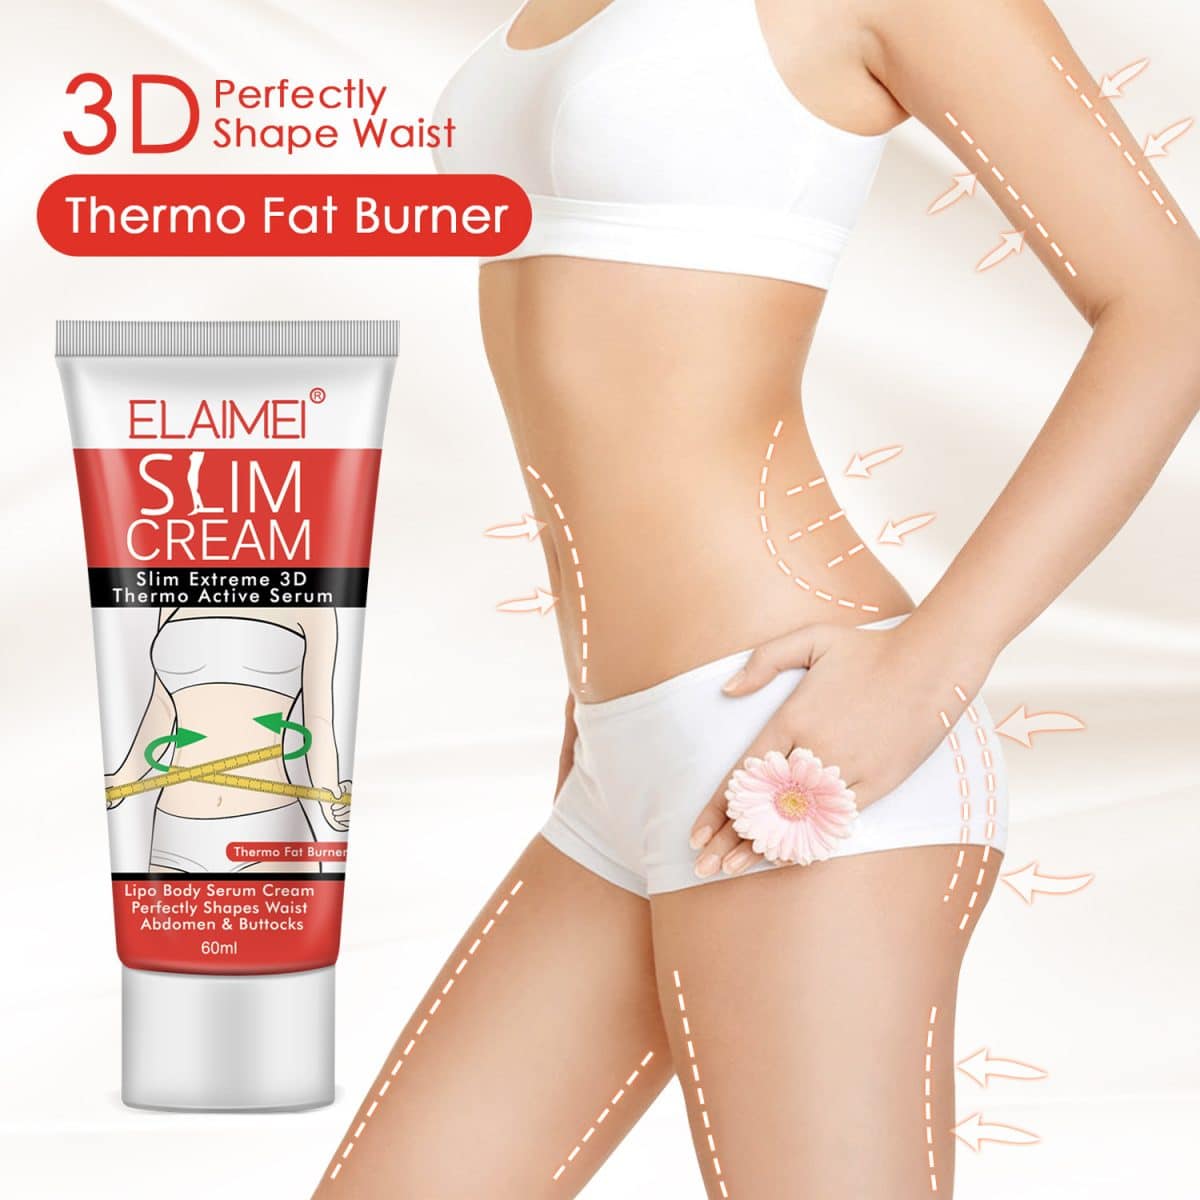 Slimming body cream